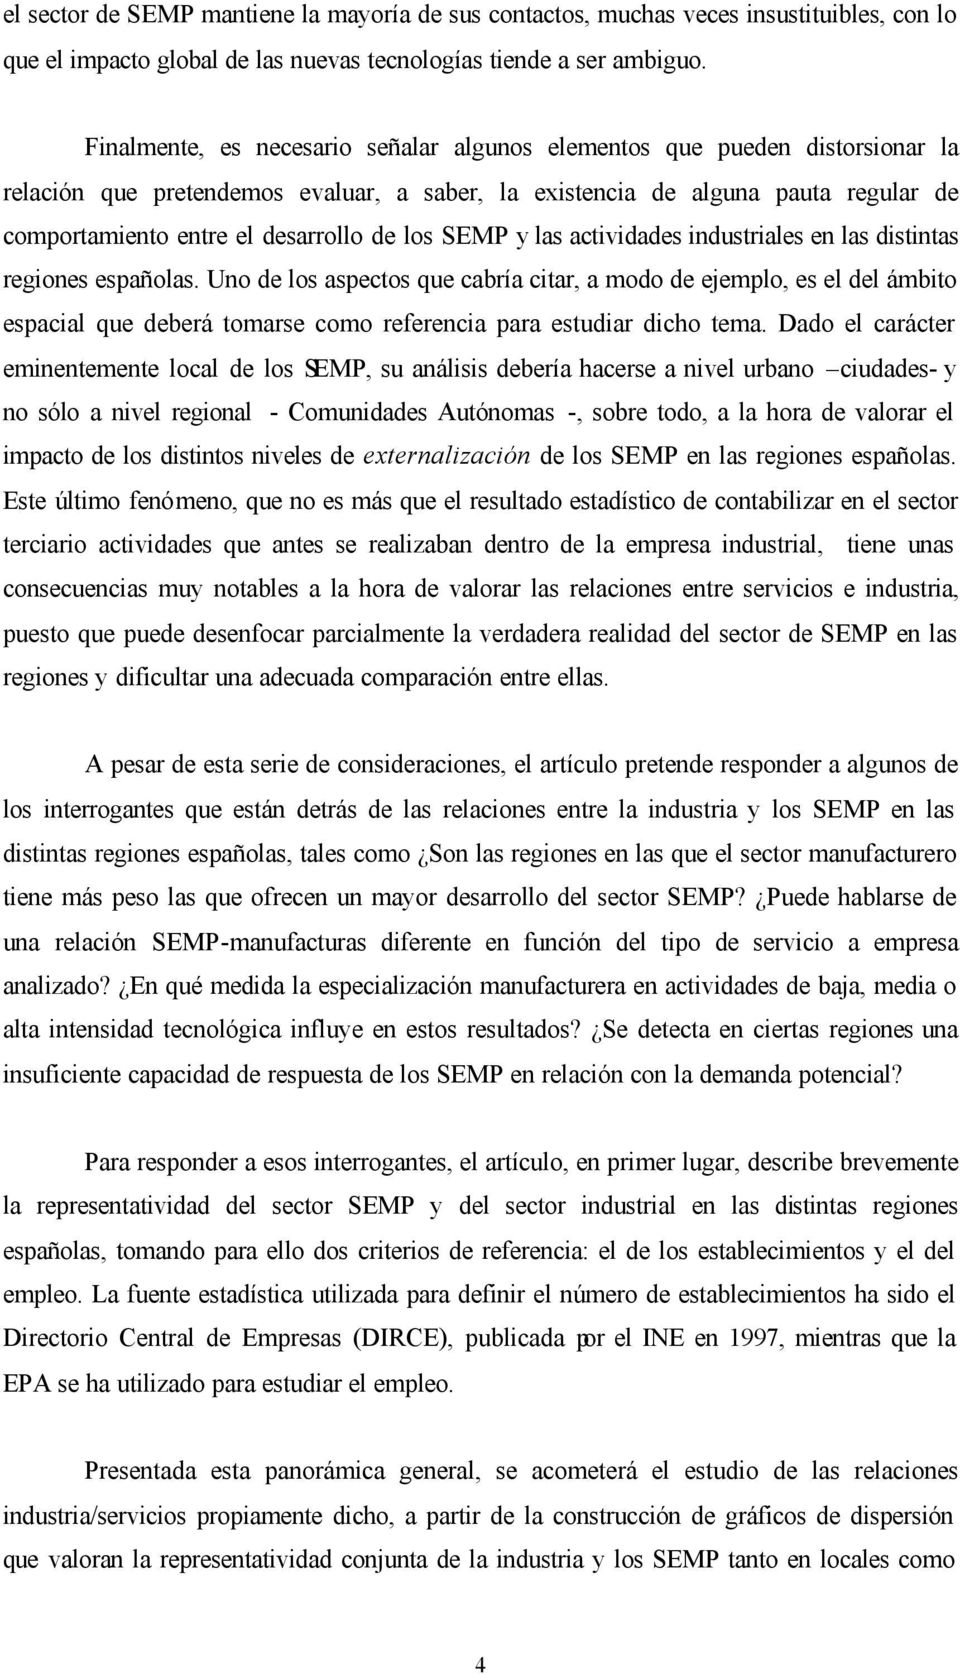 los SEMP y las actividades industriales en las distintas regiones españolas.